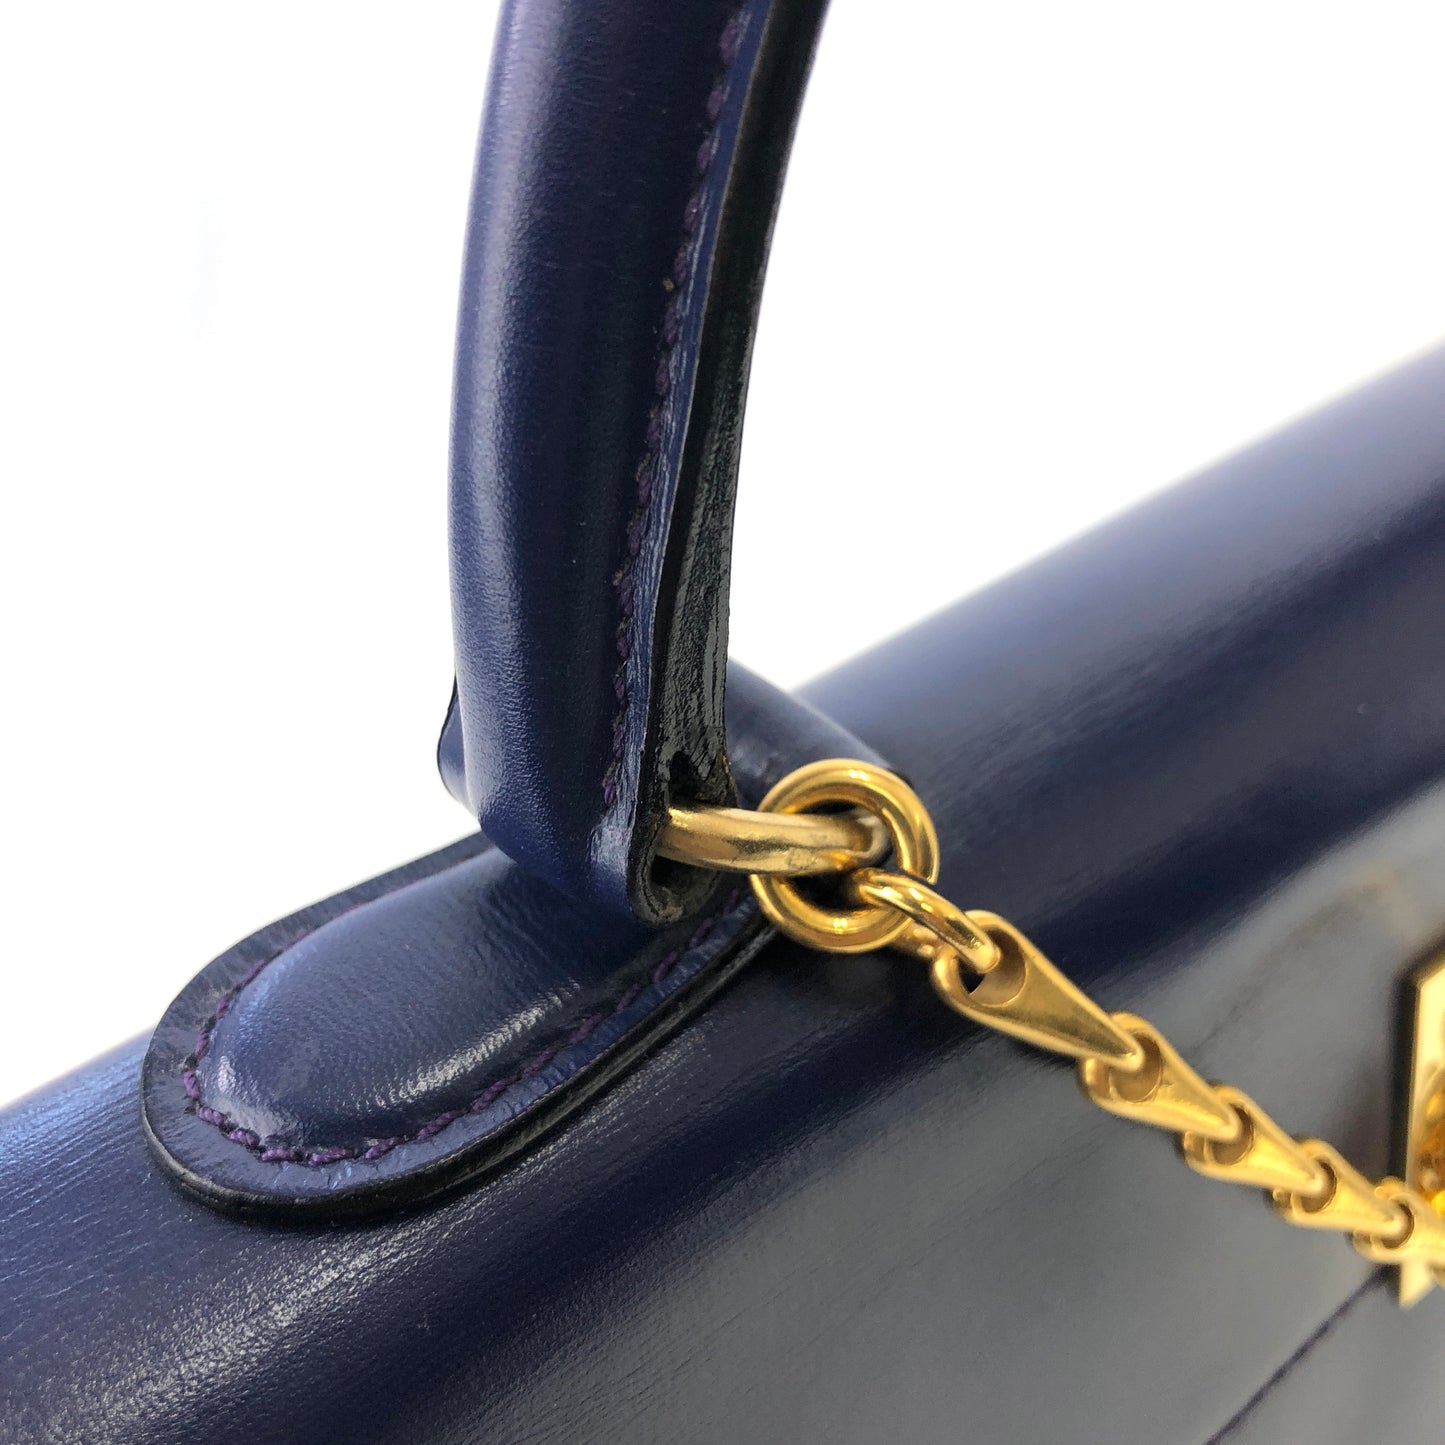 CELINE Gancini Shoulder bag Handbag Navy Vintage Old Celine hga65j